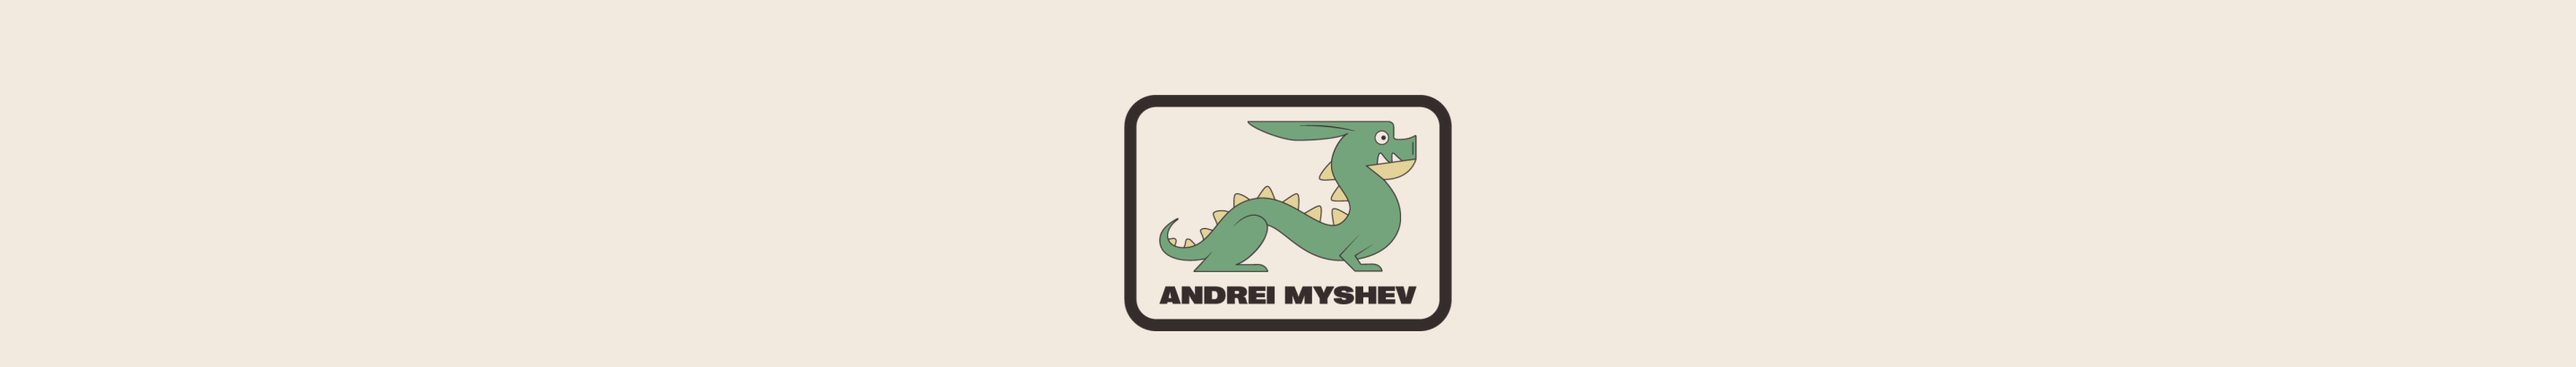 Andrei Myshev's profile banner